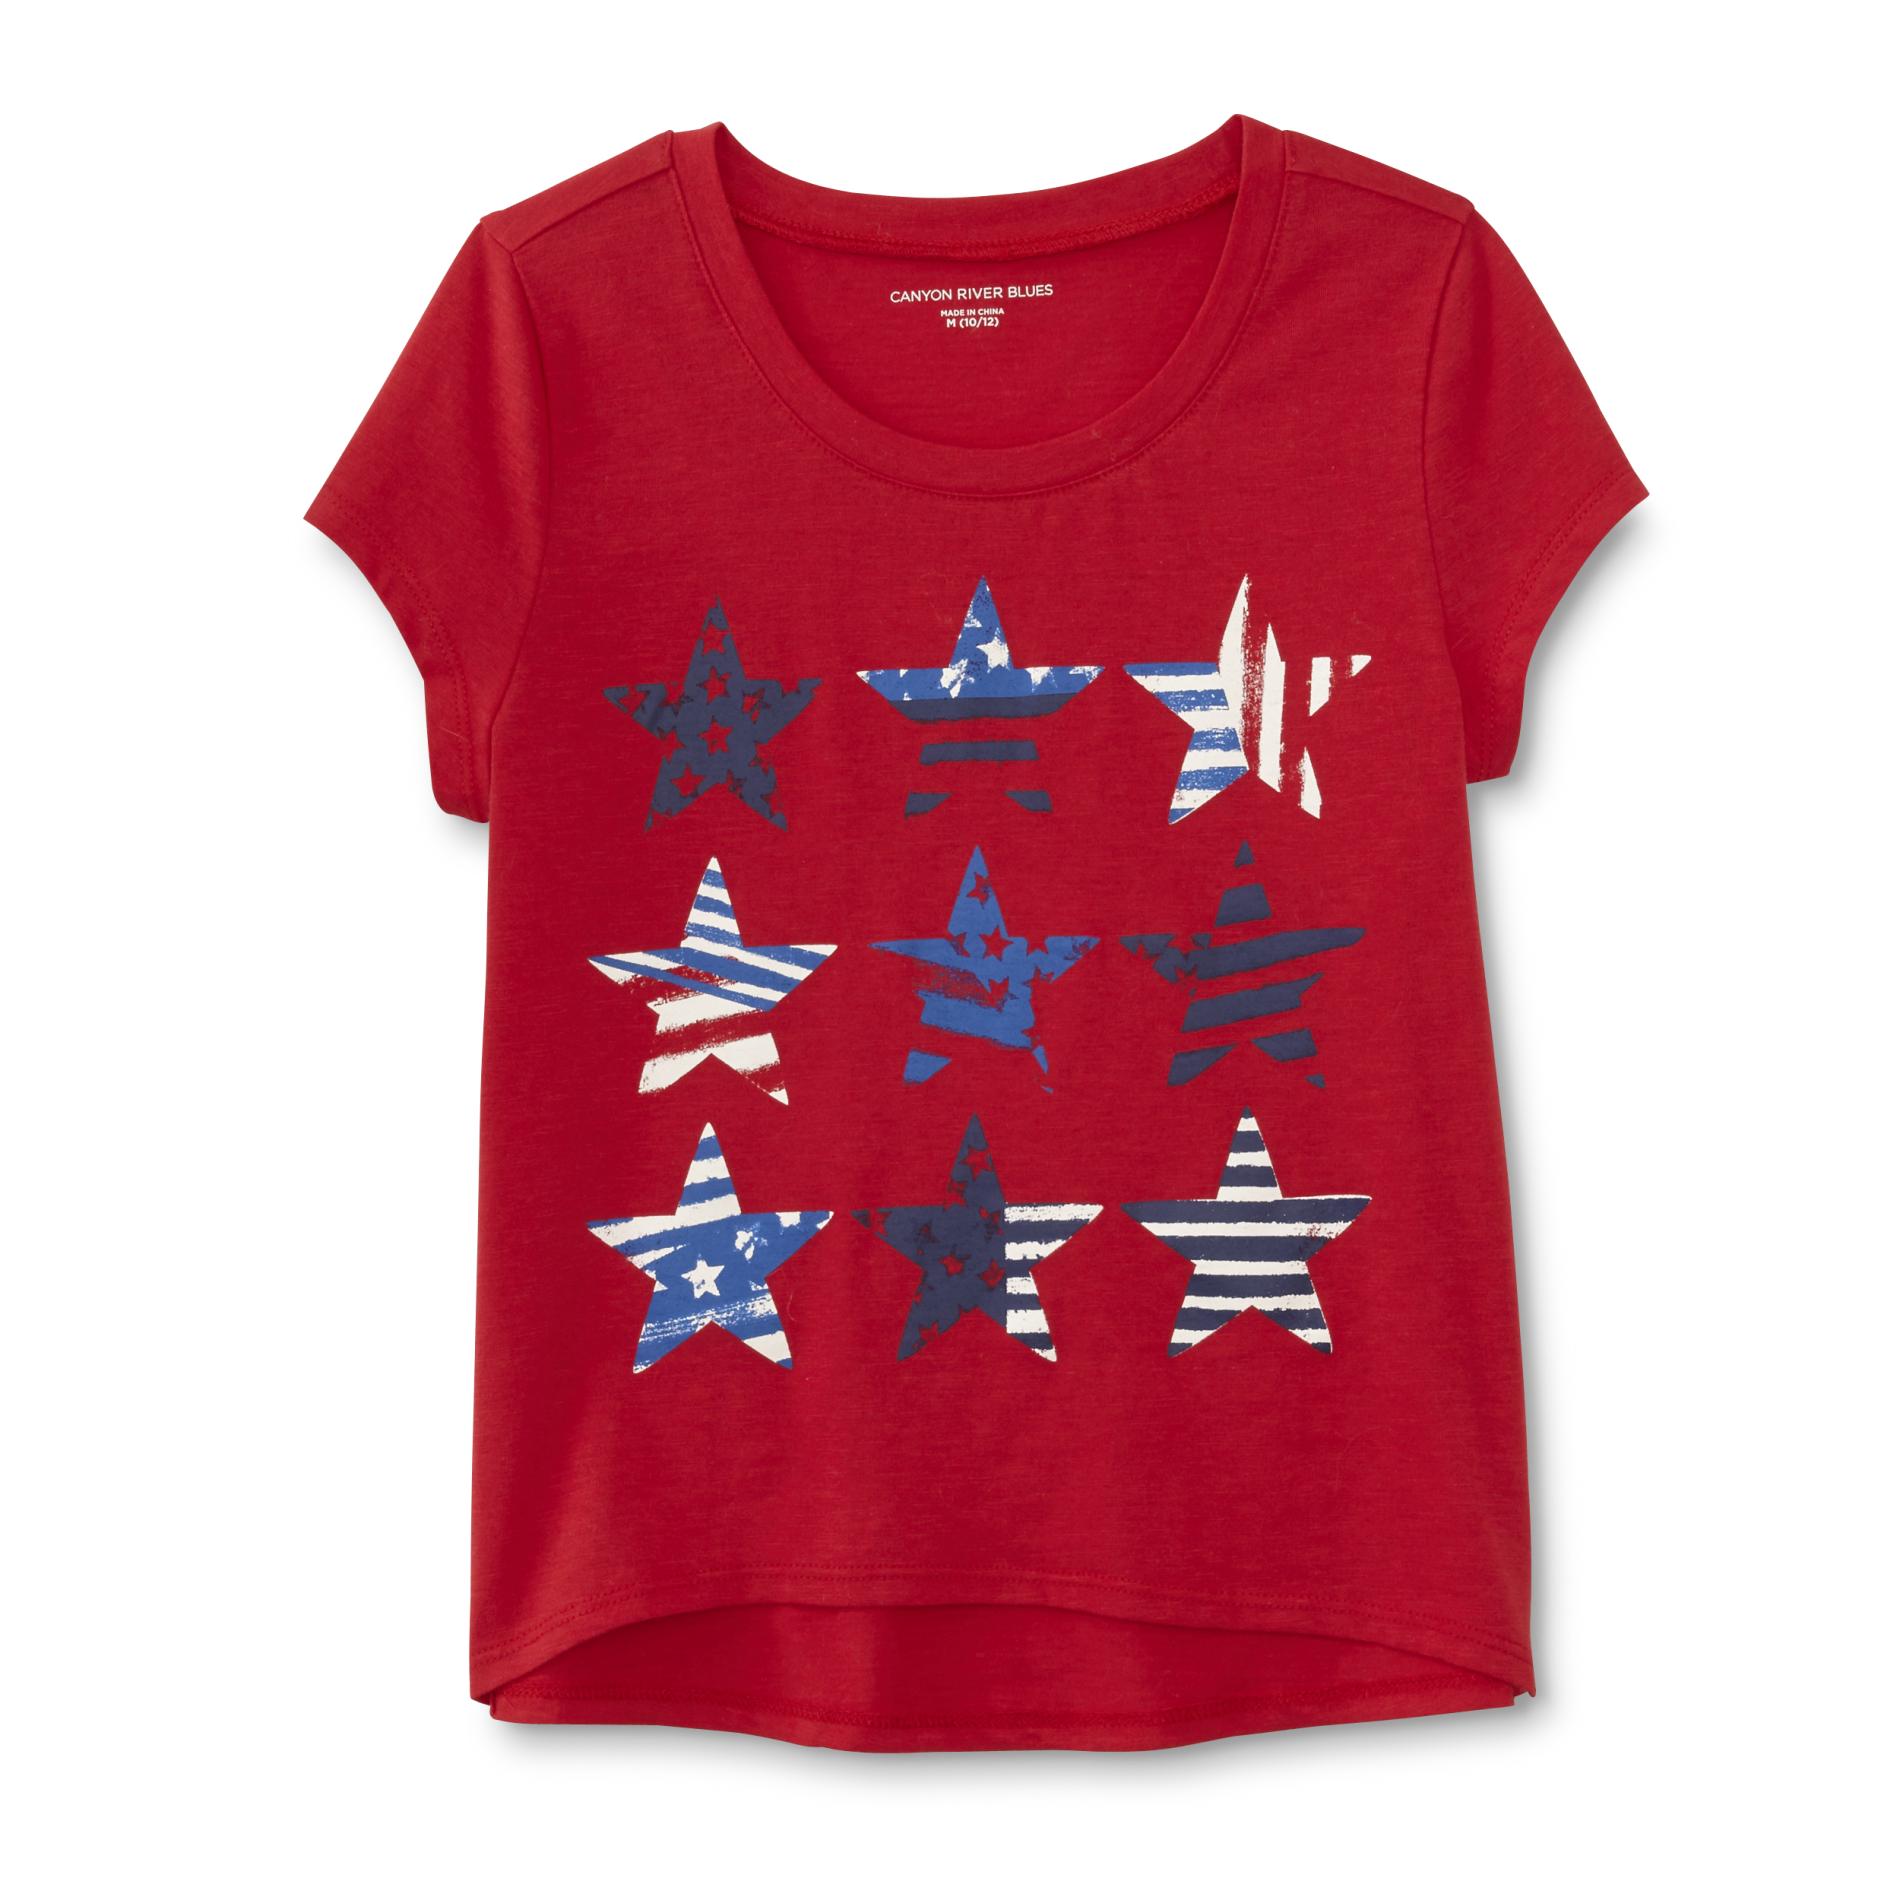 Girl's Graphic T-Shirt - Stars